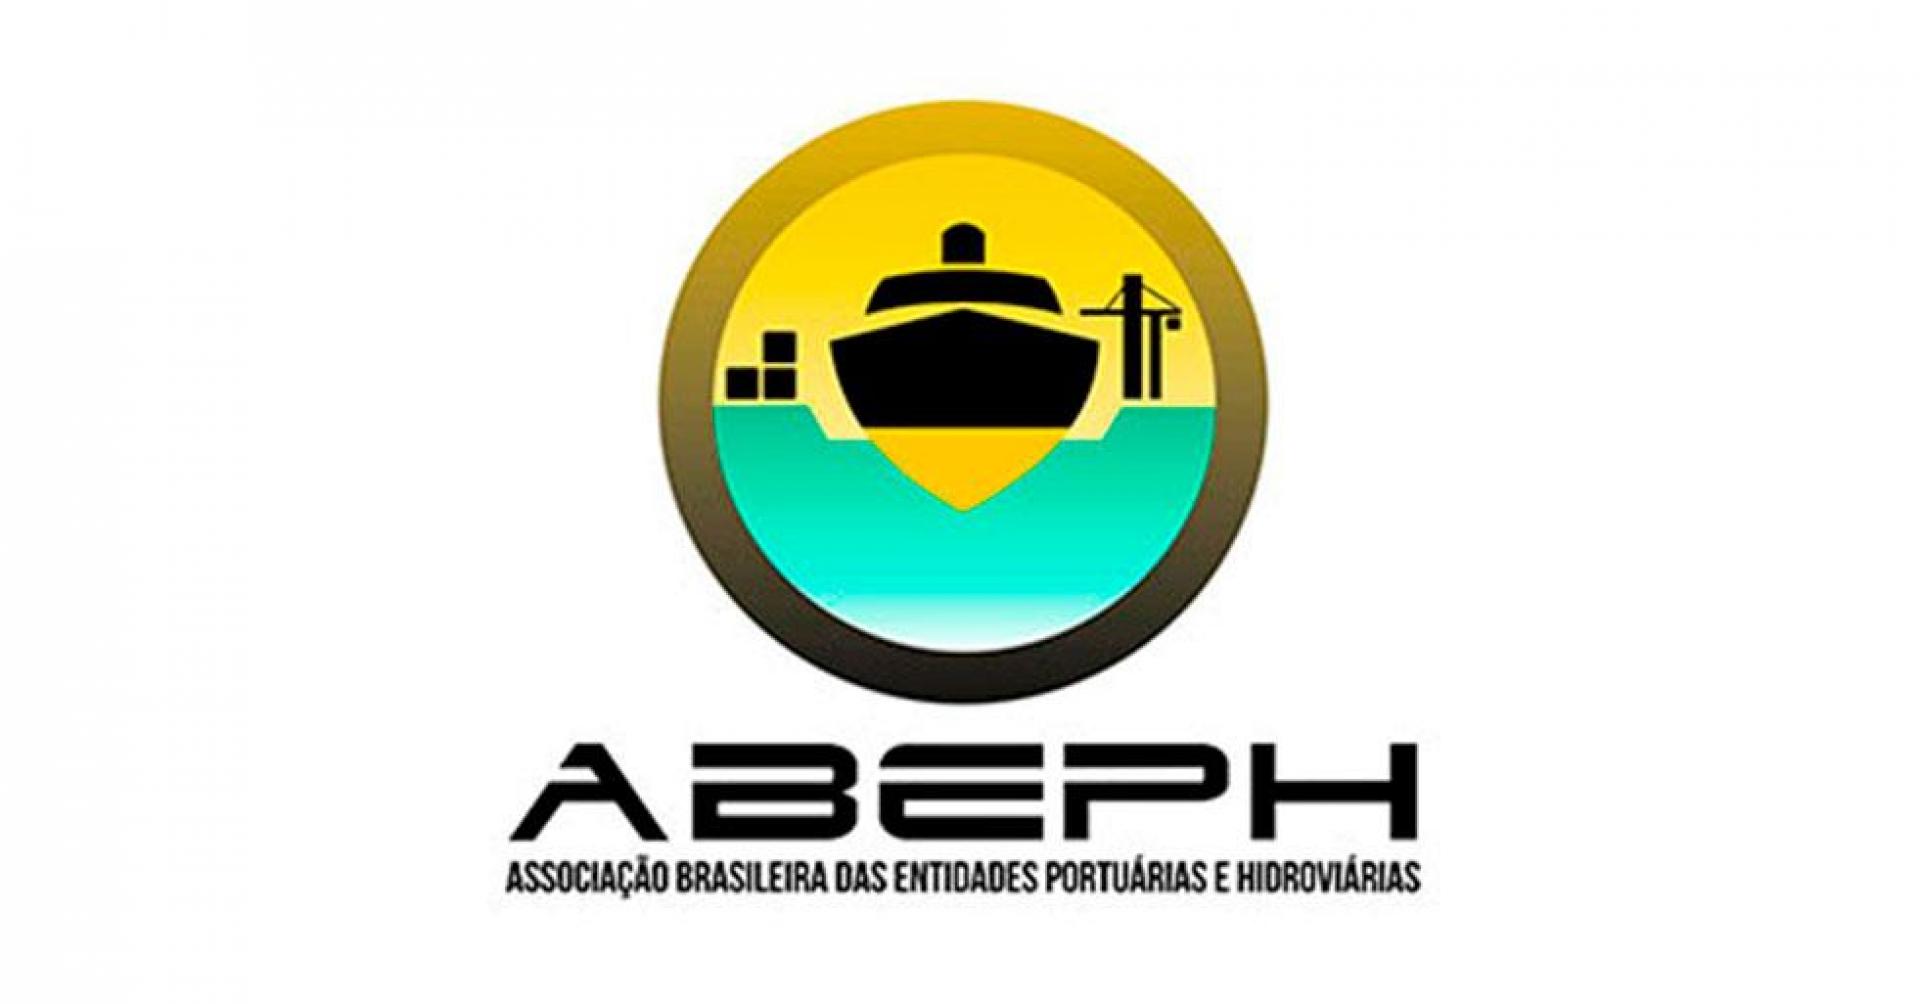 ABEPH - Associação Brasileira das Entidades Portuárias e Hidroviárias